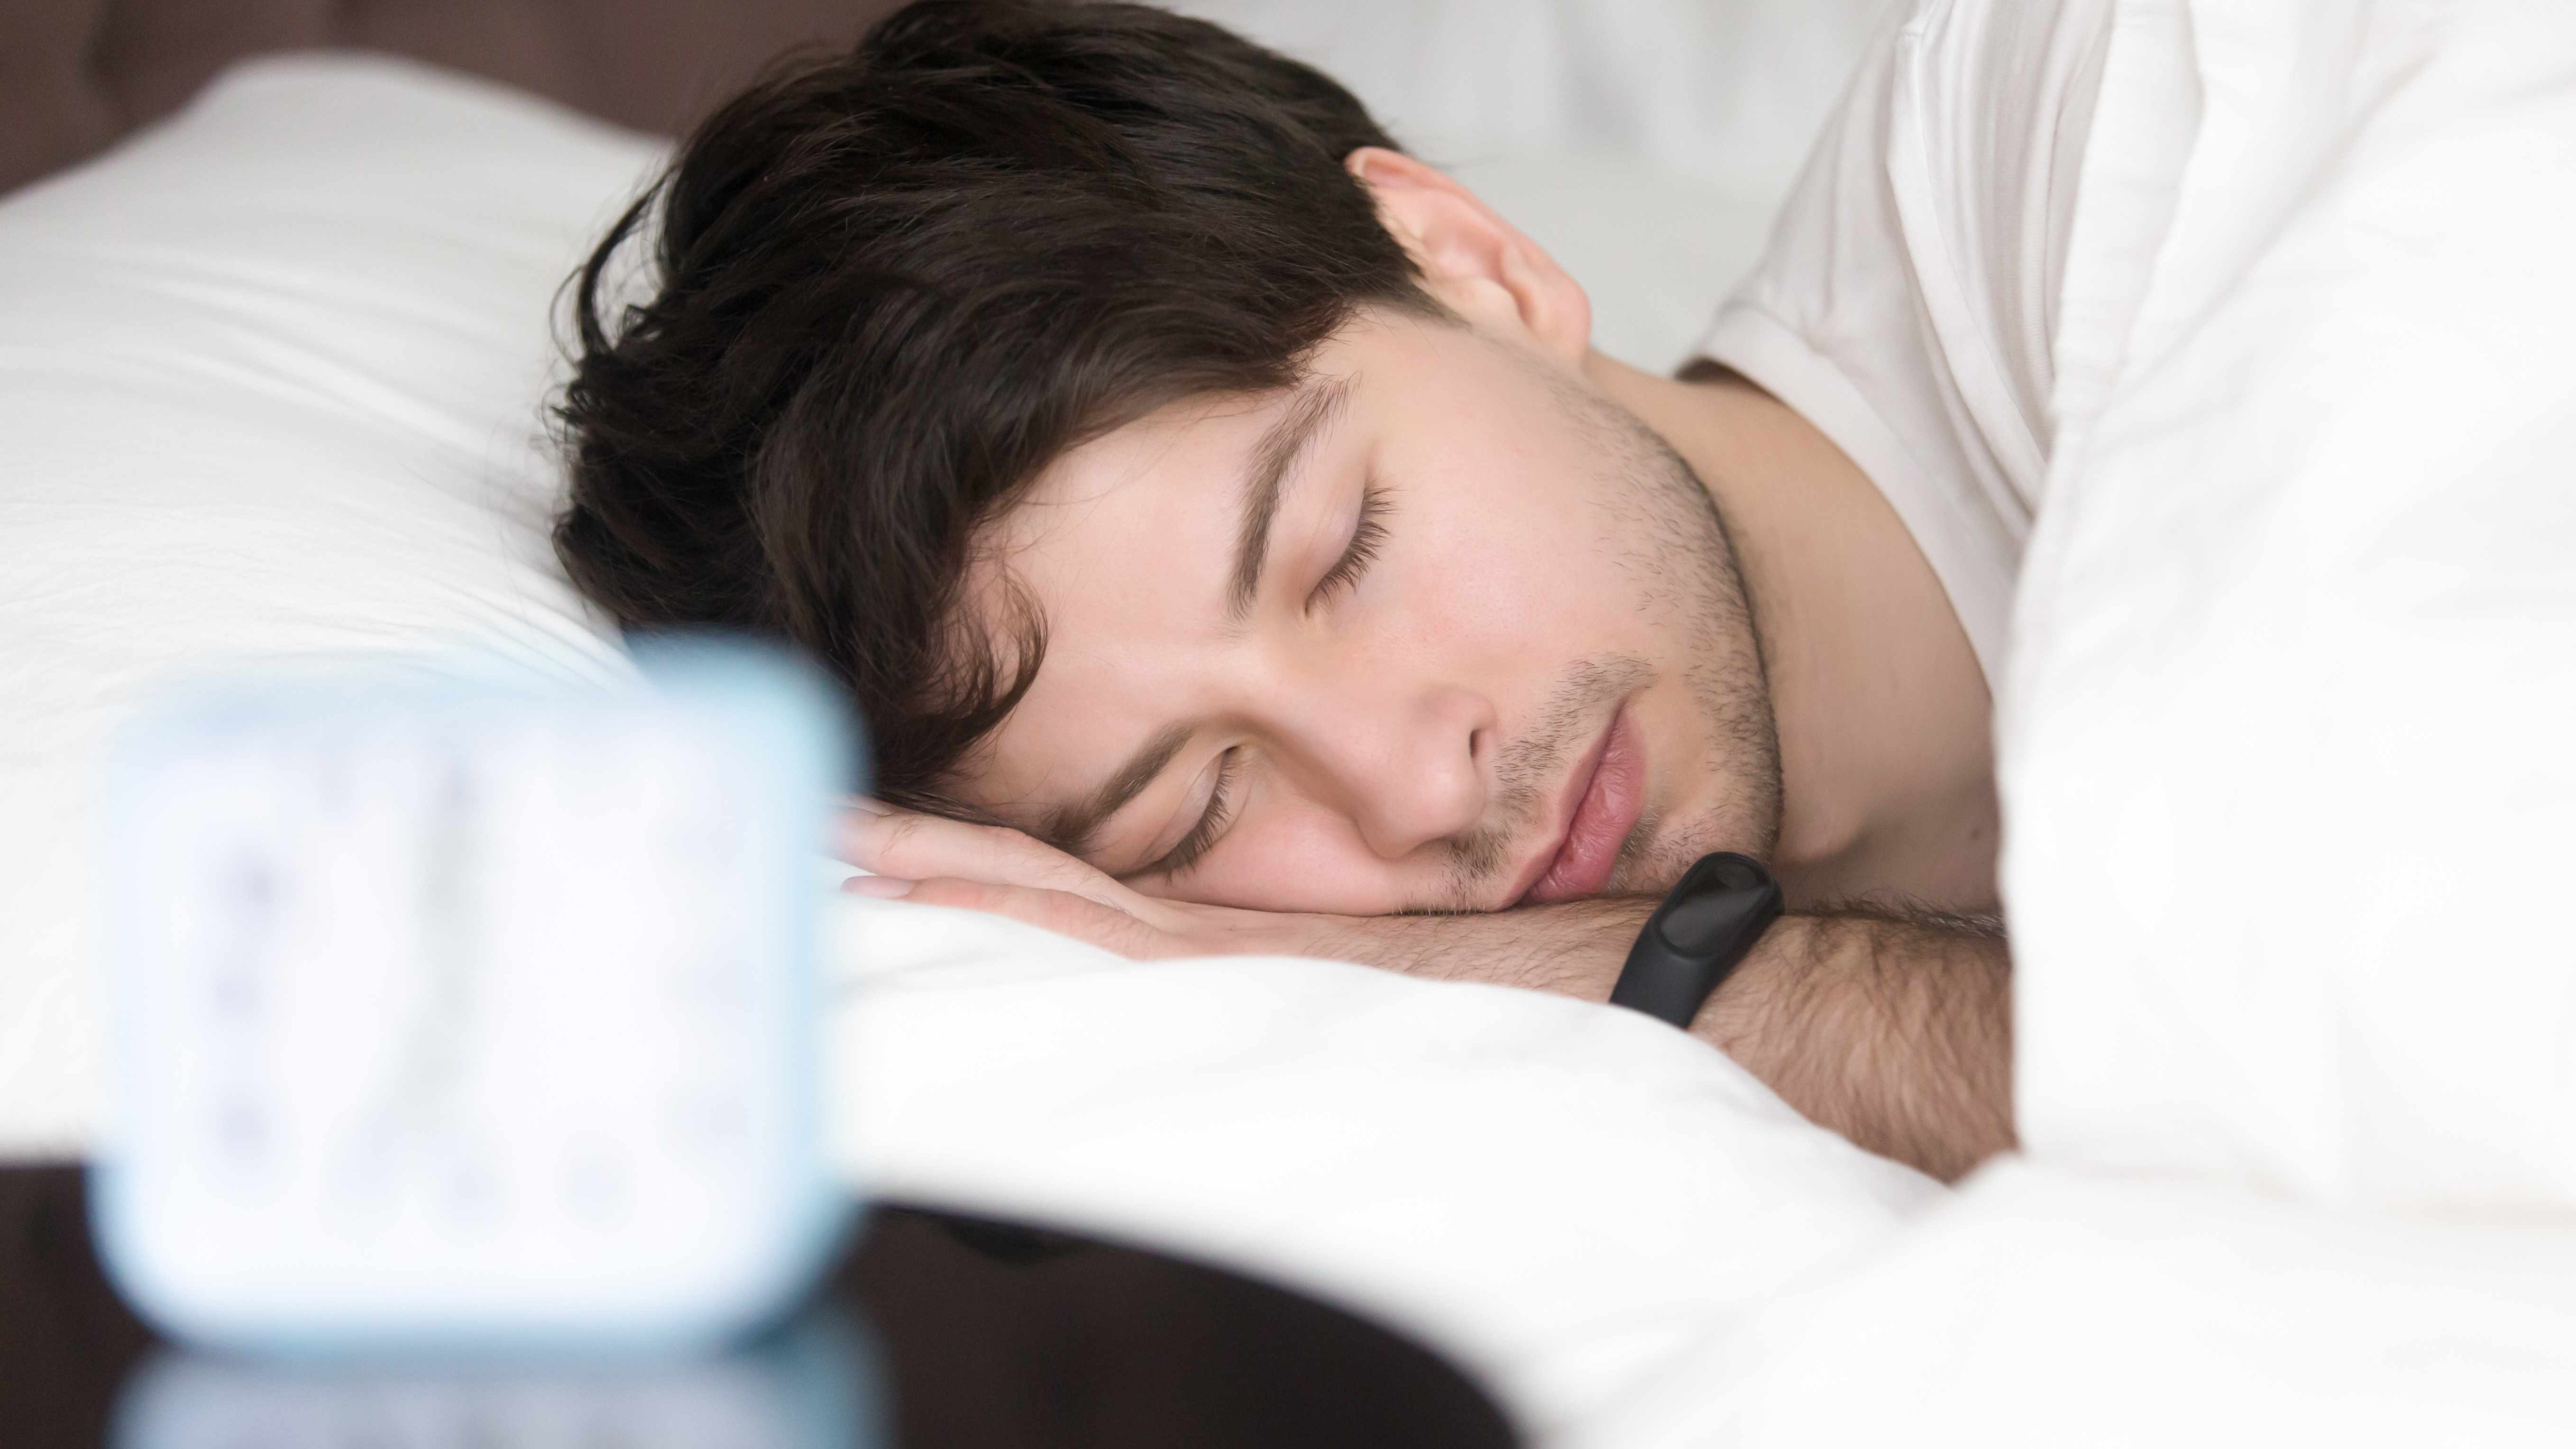 El 80% de los viajeros tienen dificultades para dormir cuando están lejos de su hogar según estudio de IHG Hotels & Resorts